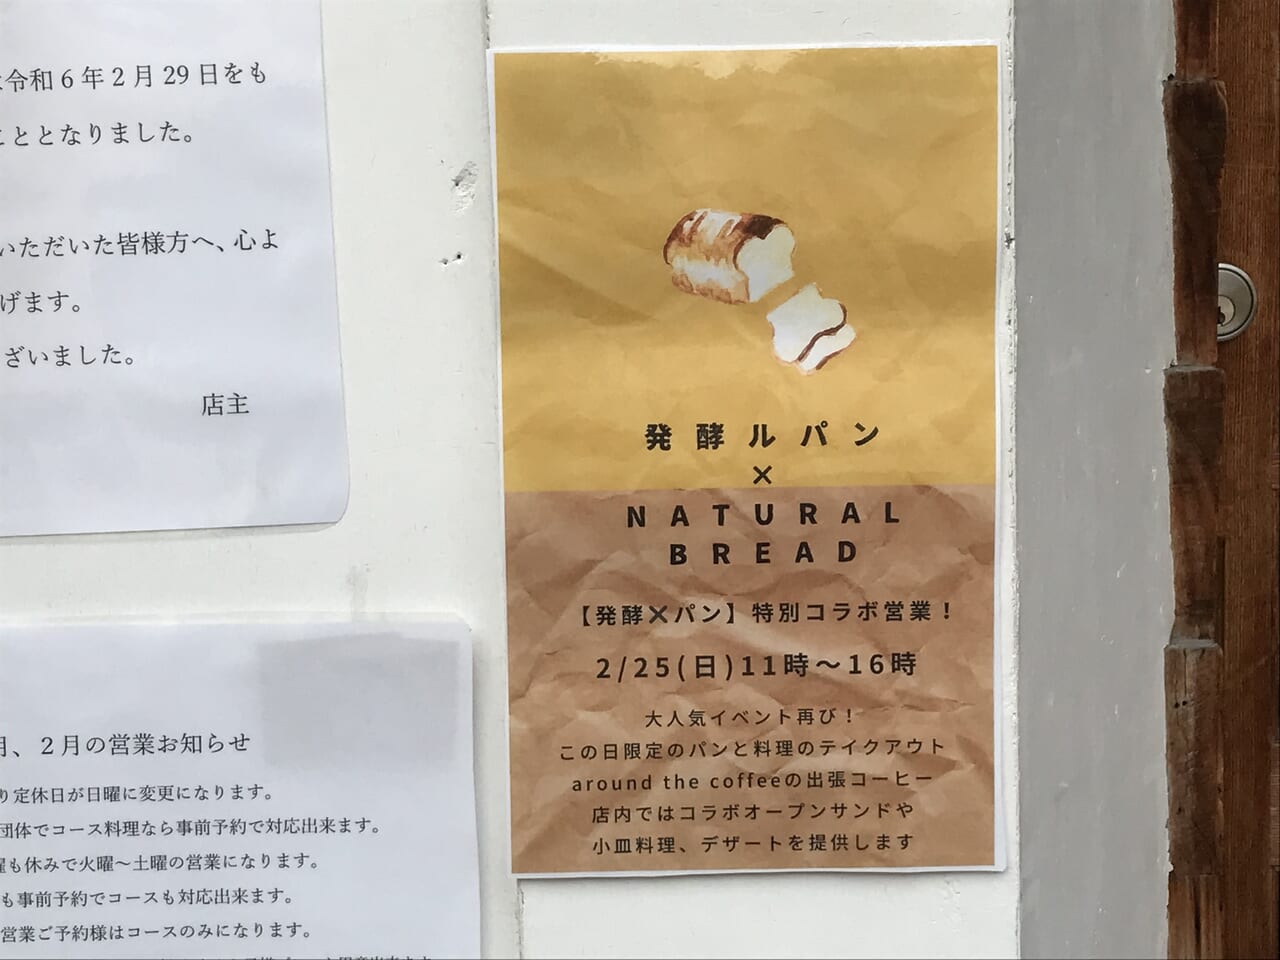 大阪昭和町の発酵ルパンのイベント告知